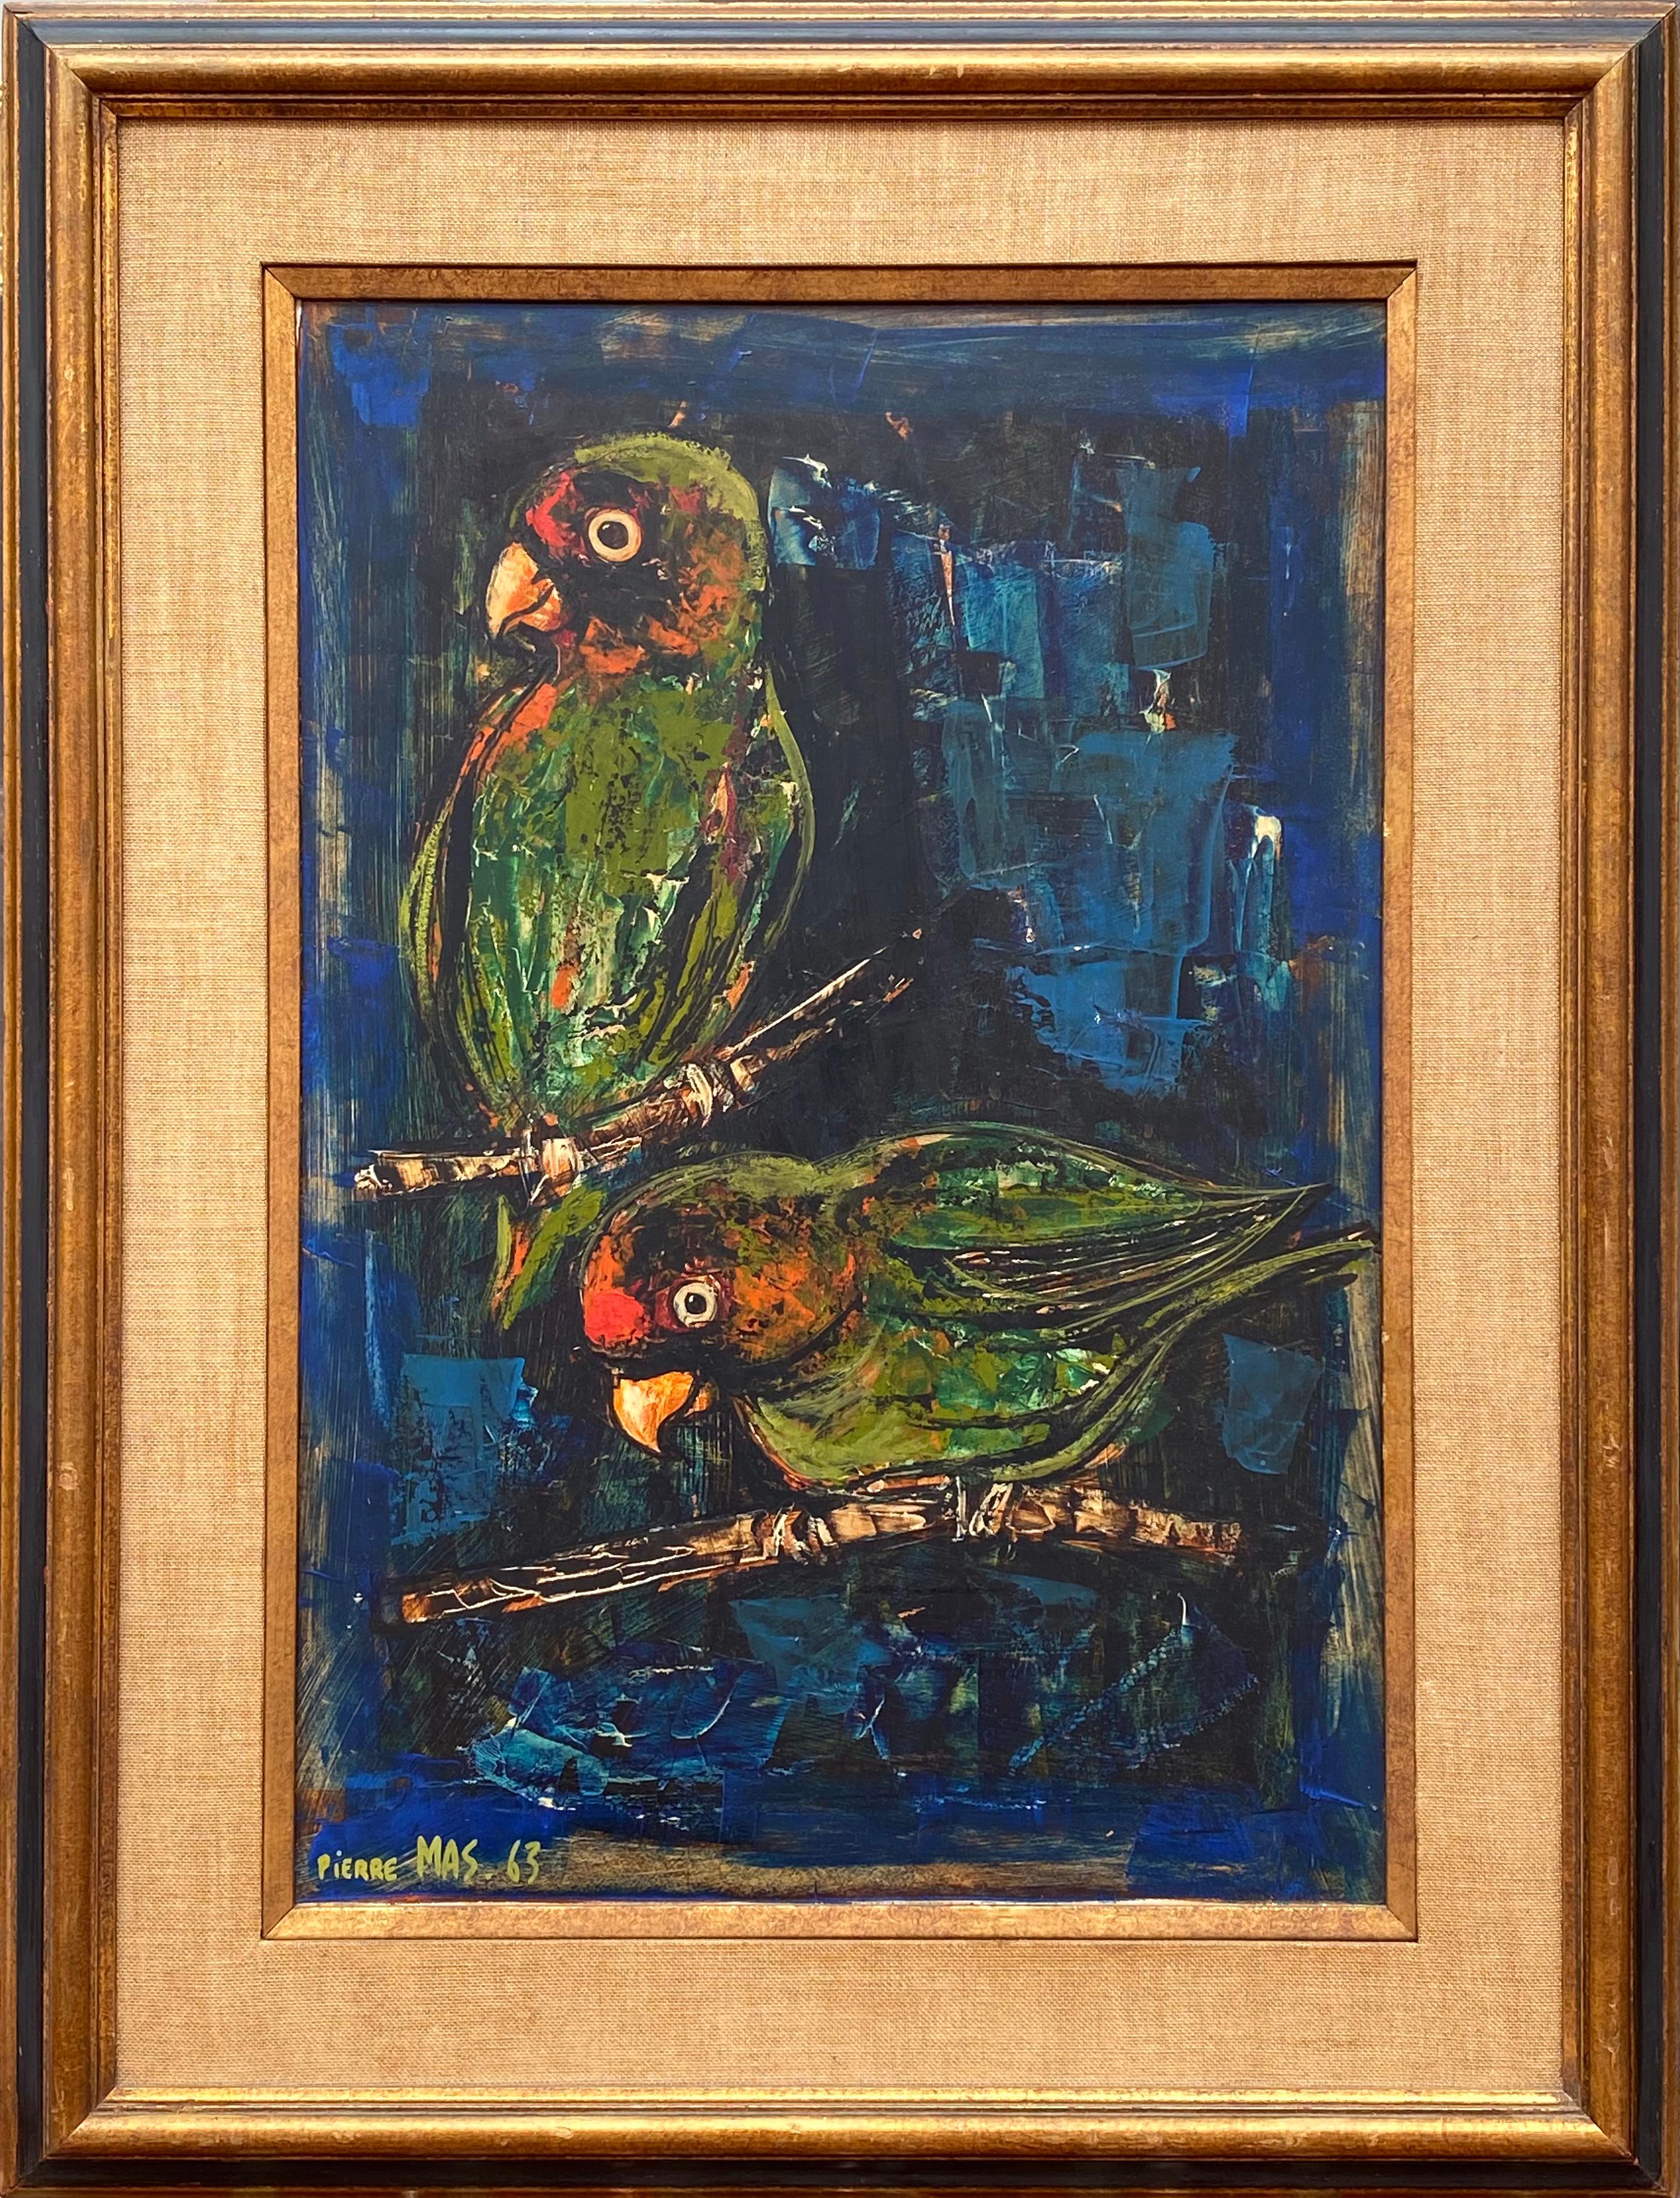 Papageien – Painting von Pierre Mas 